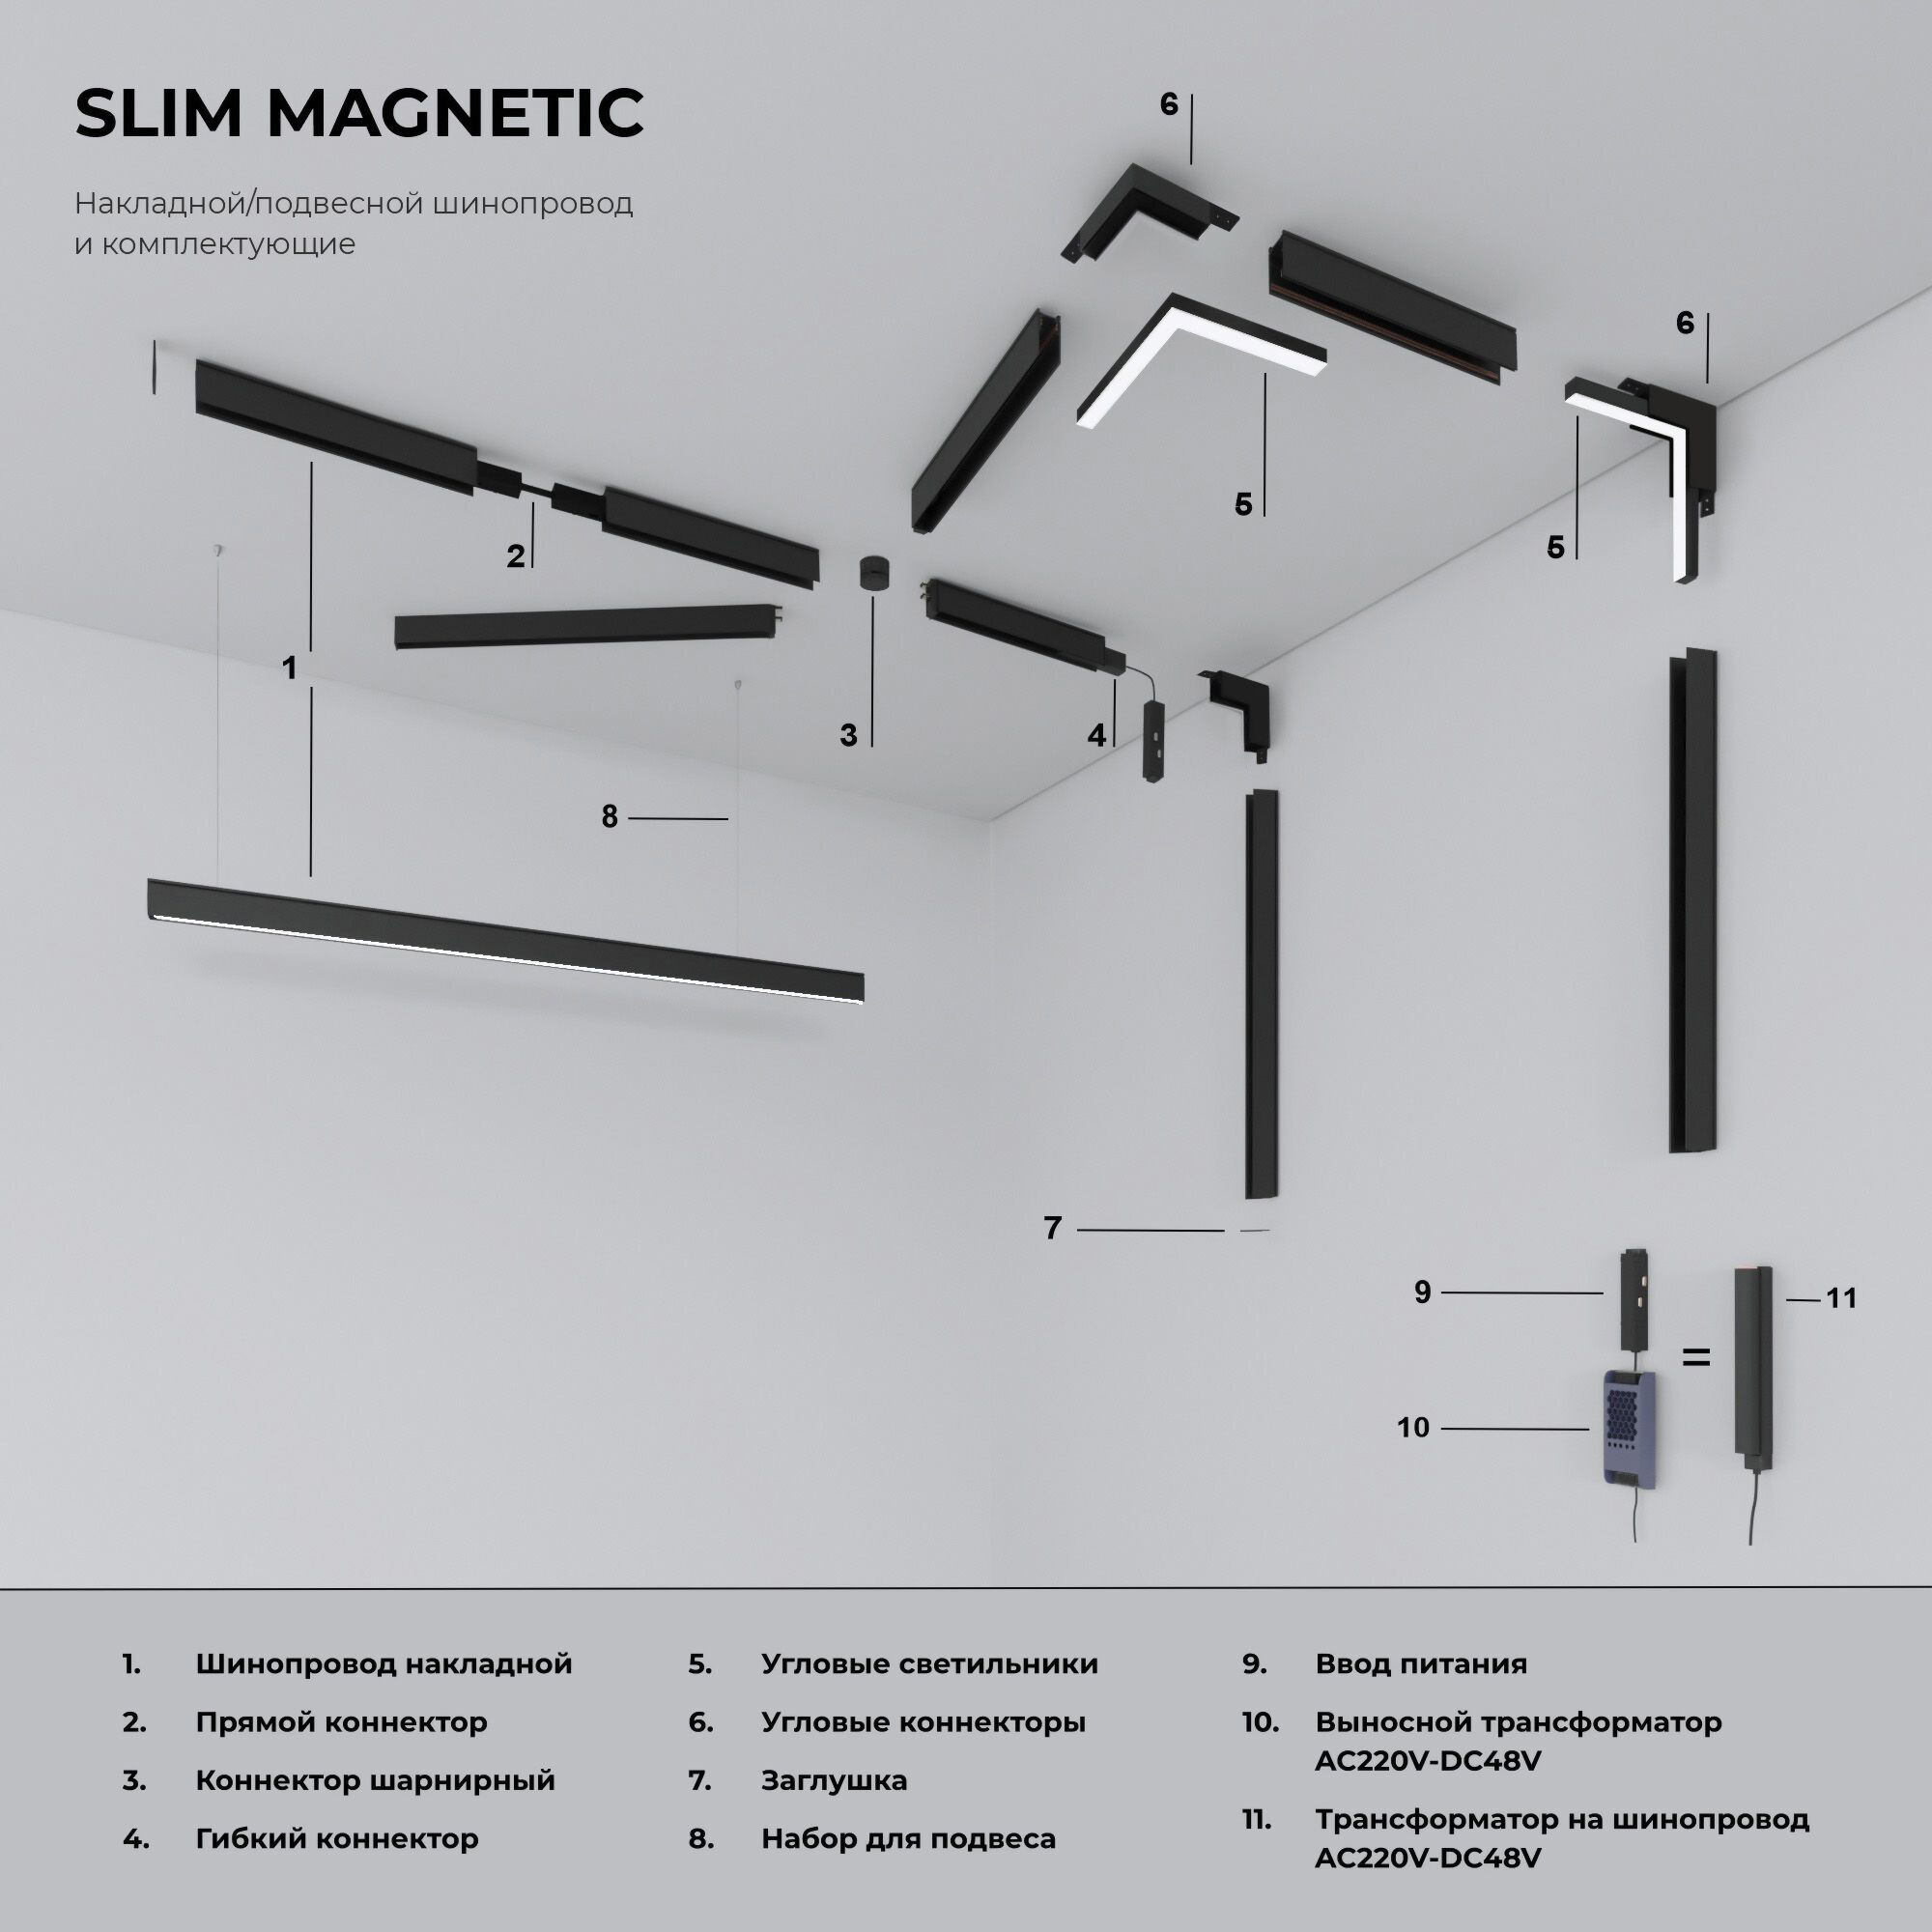 Slim Magnetic Блок питания 200W 95042/00